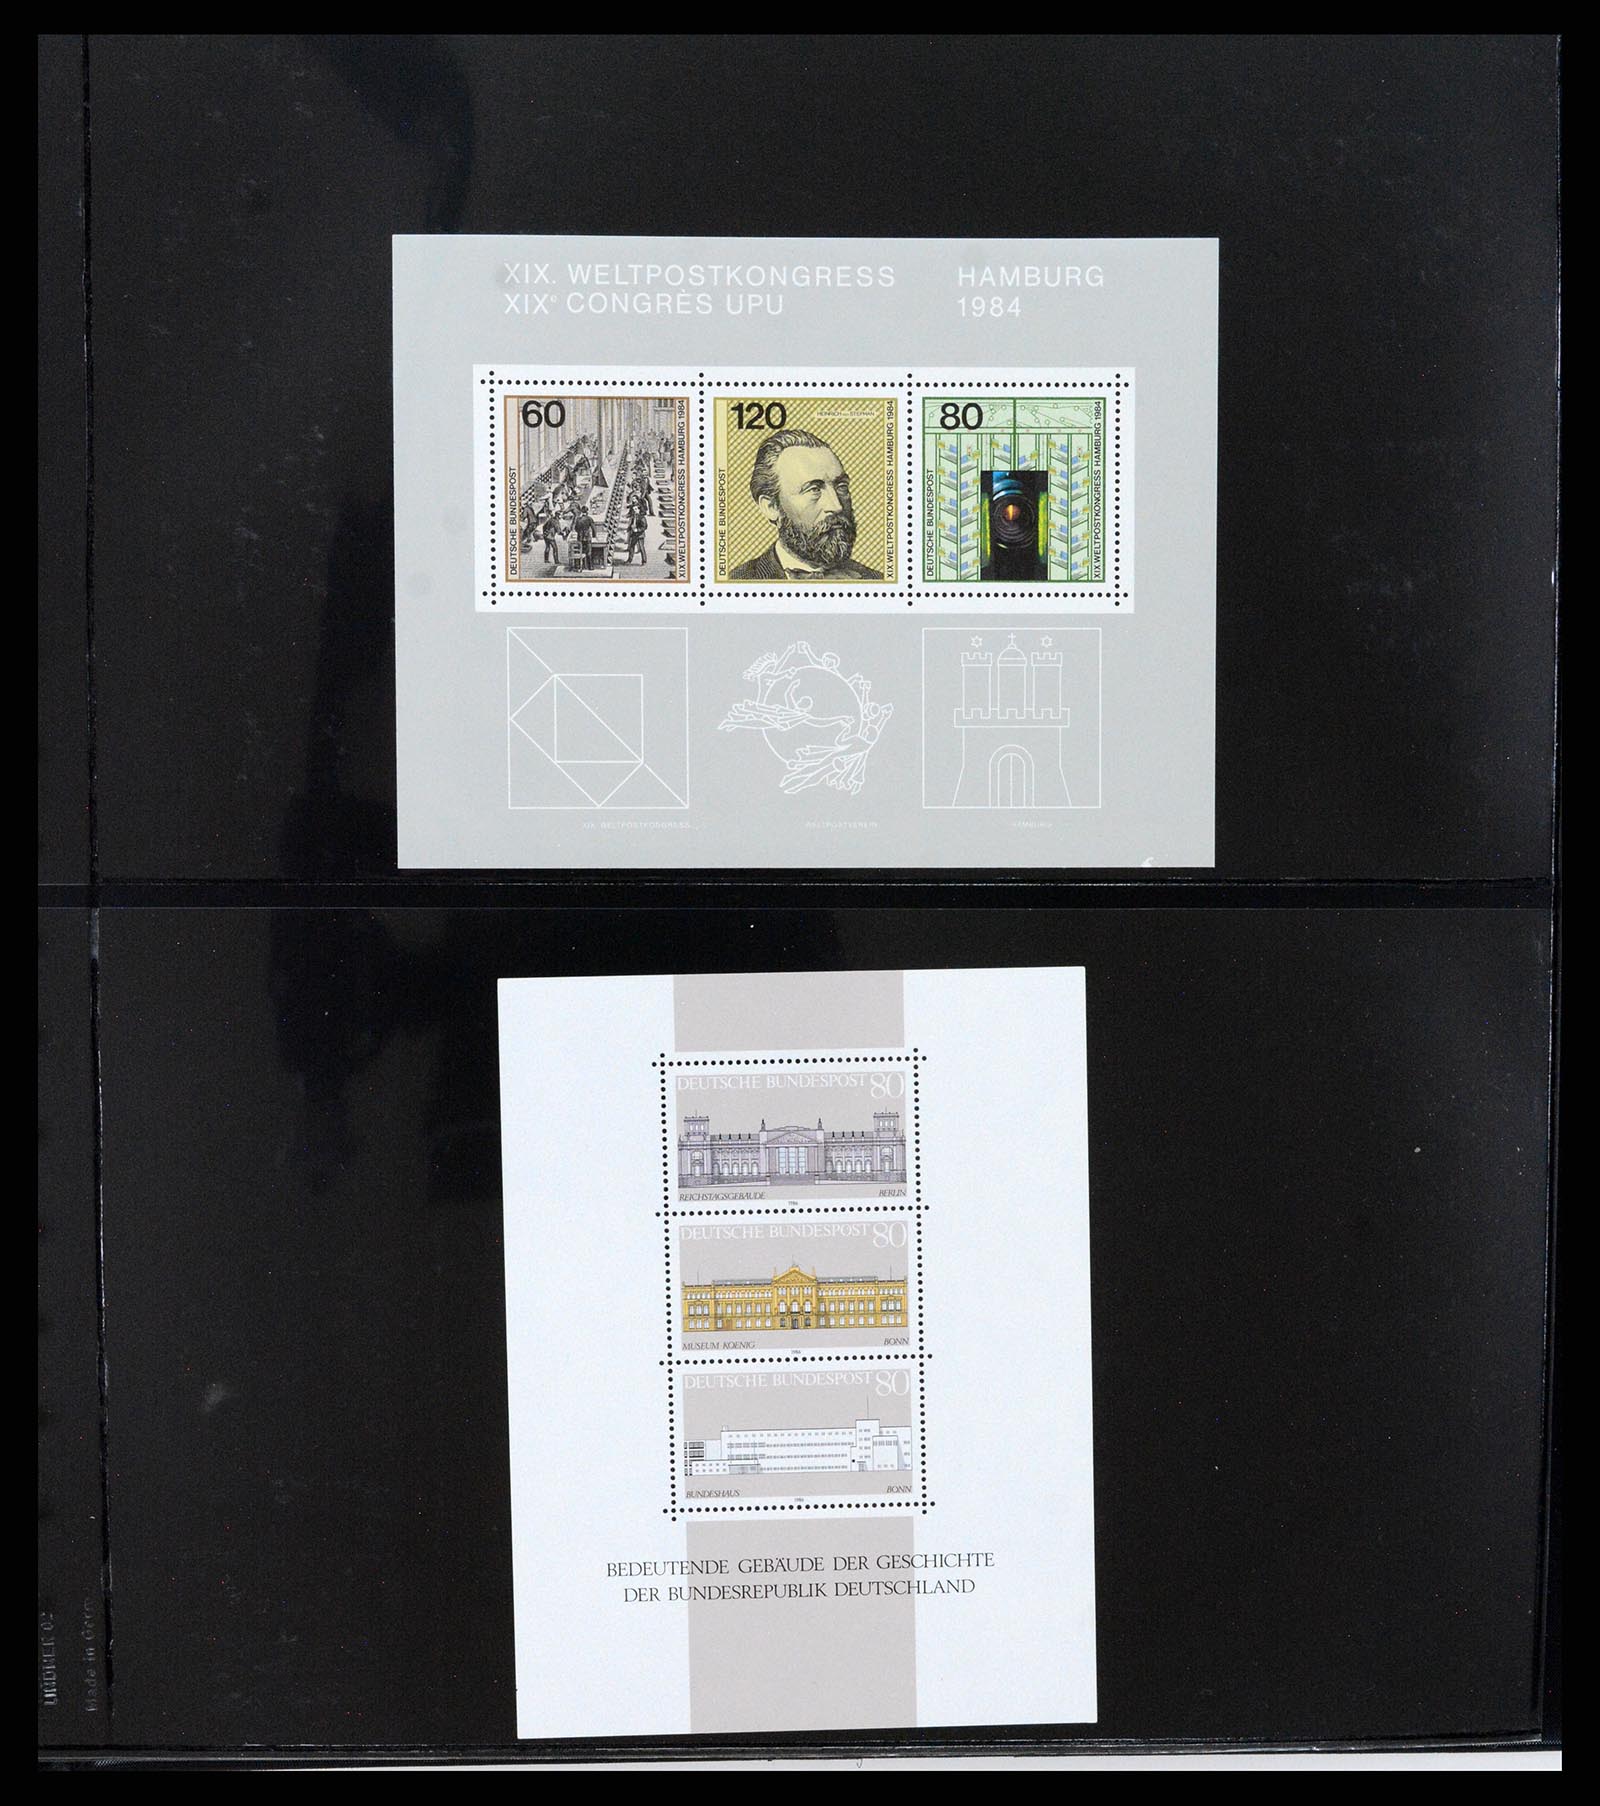 37345 037 - Stamp collection 37345 European countries souvenir sheets.